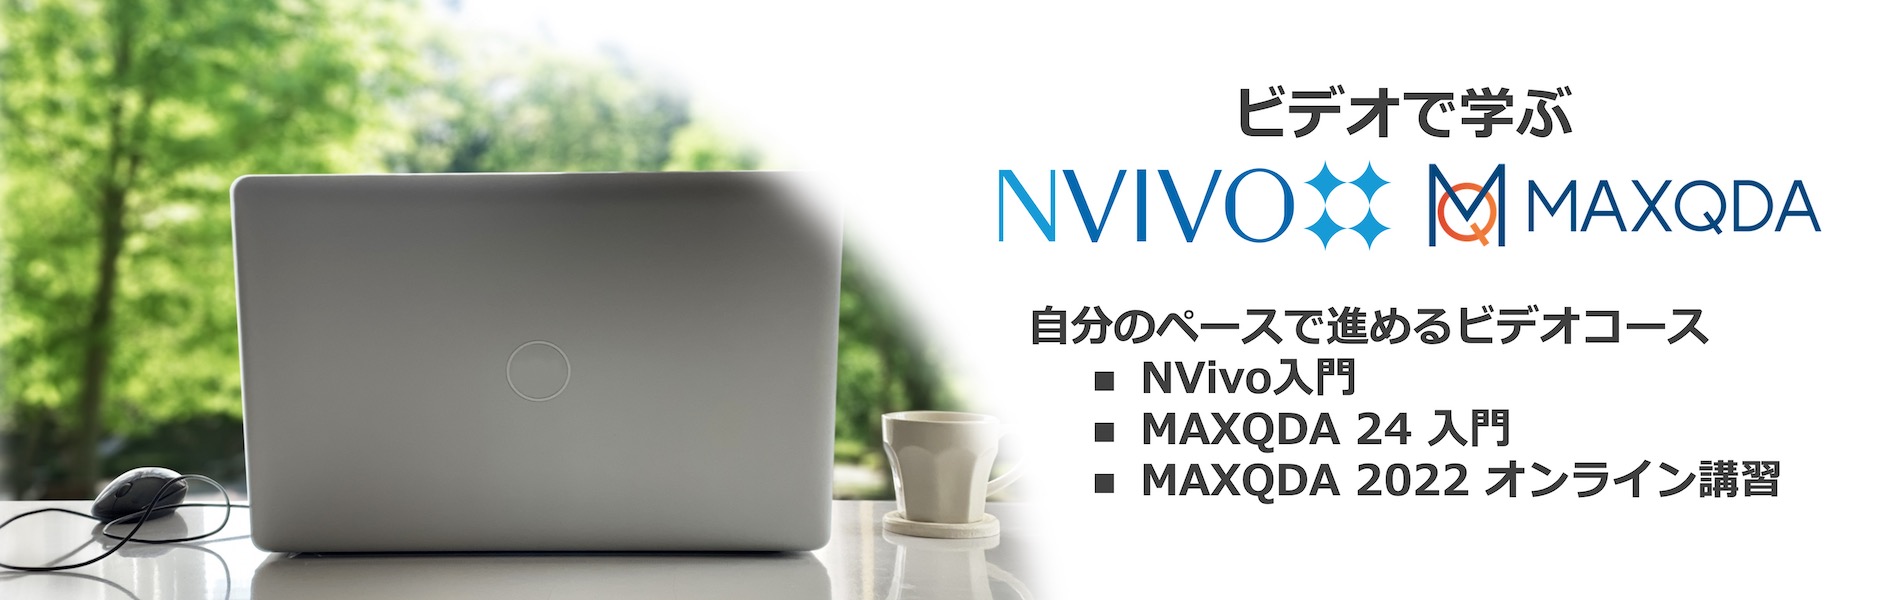 自分のペースで進めるビデオコース: NVivo MAXQDA